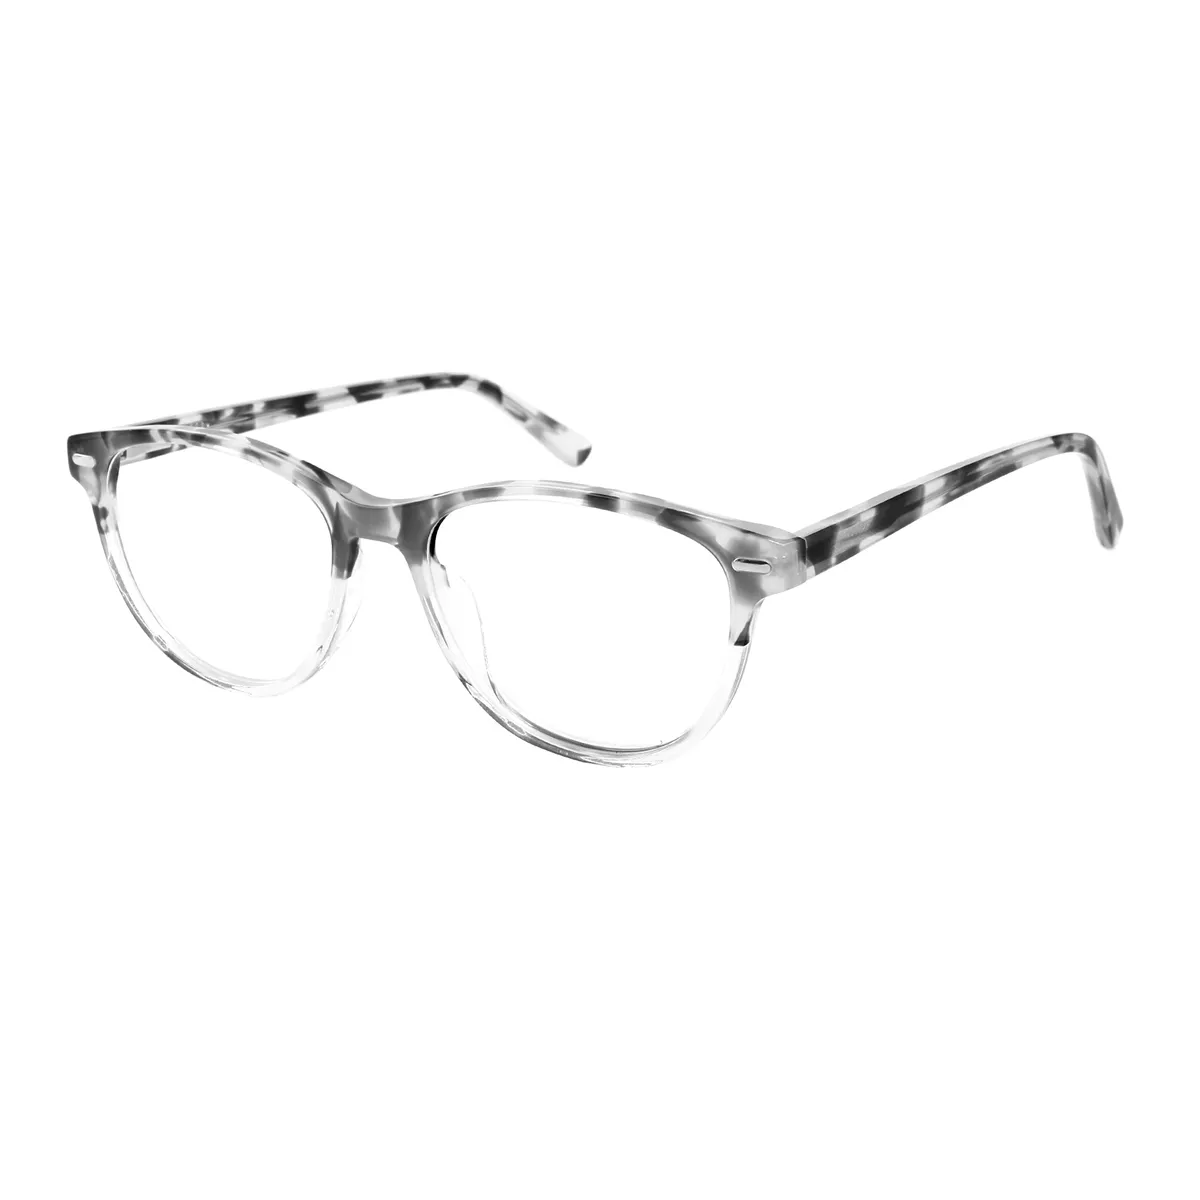 Classic Oval Tortoiseshell Glasses for Men & Women